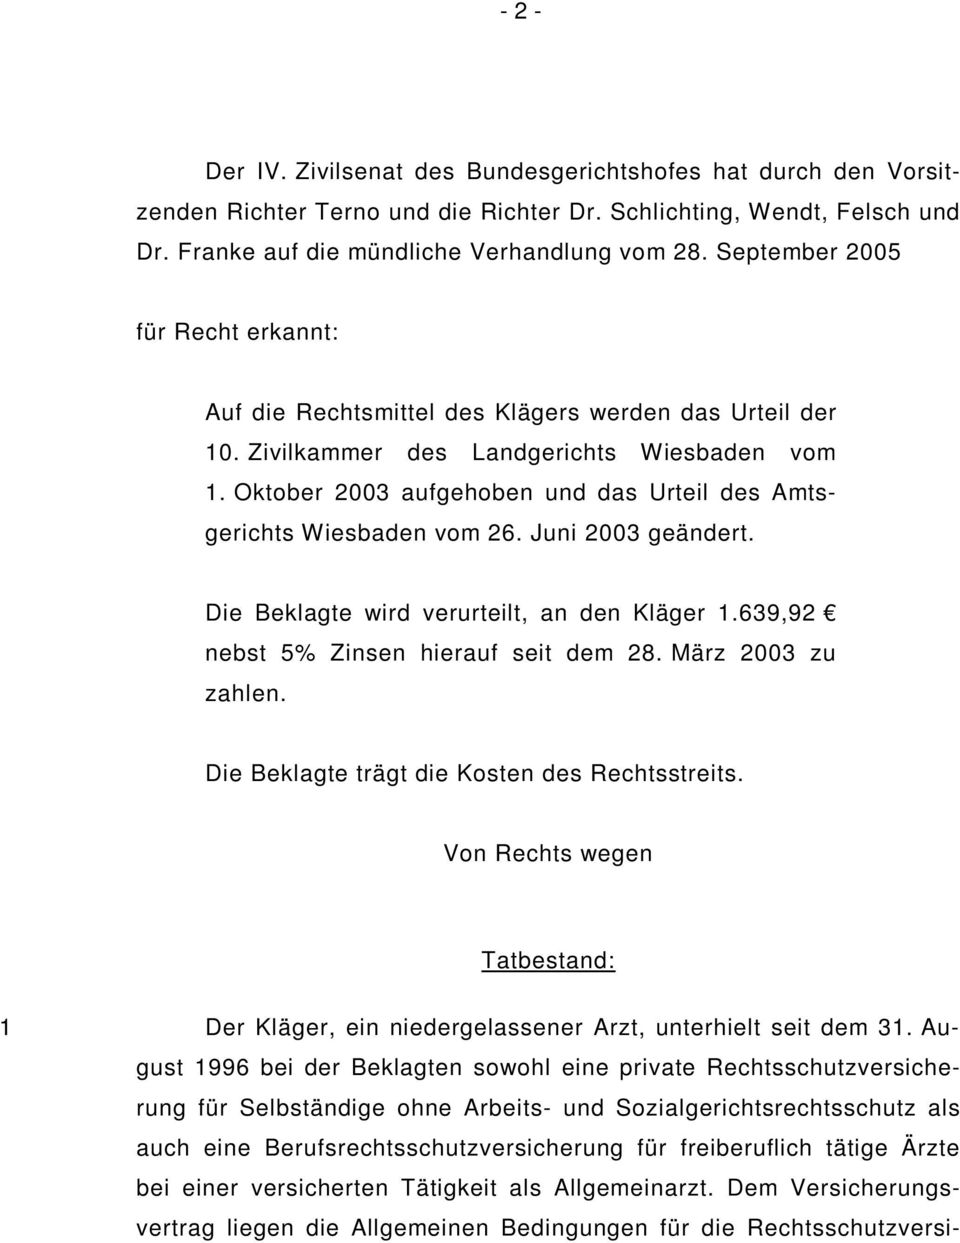 Oktober 2003 aufgehoben und das Urteil des Amtsgerichts Wiesbaden vom 26. Juni 2003 geändert. Die Beklagte wird verurteilt, an den Kläger 1.639,92 nebst 5% Zinsen hierauf seit dem 28.